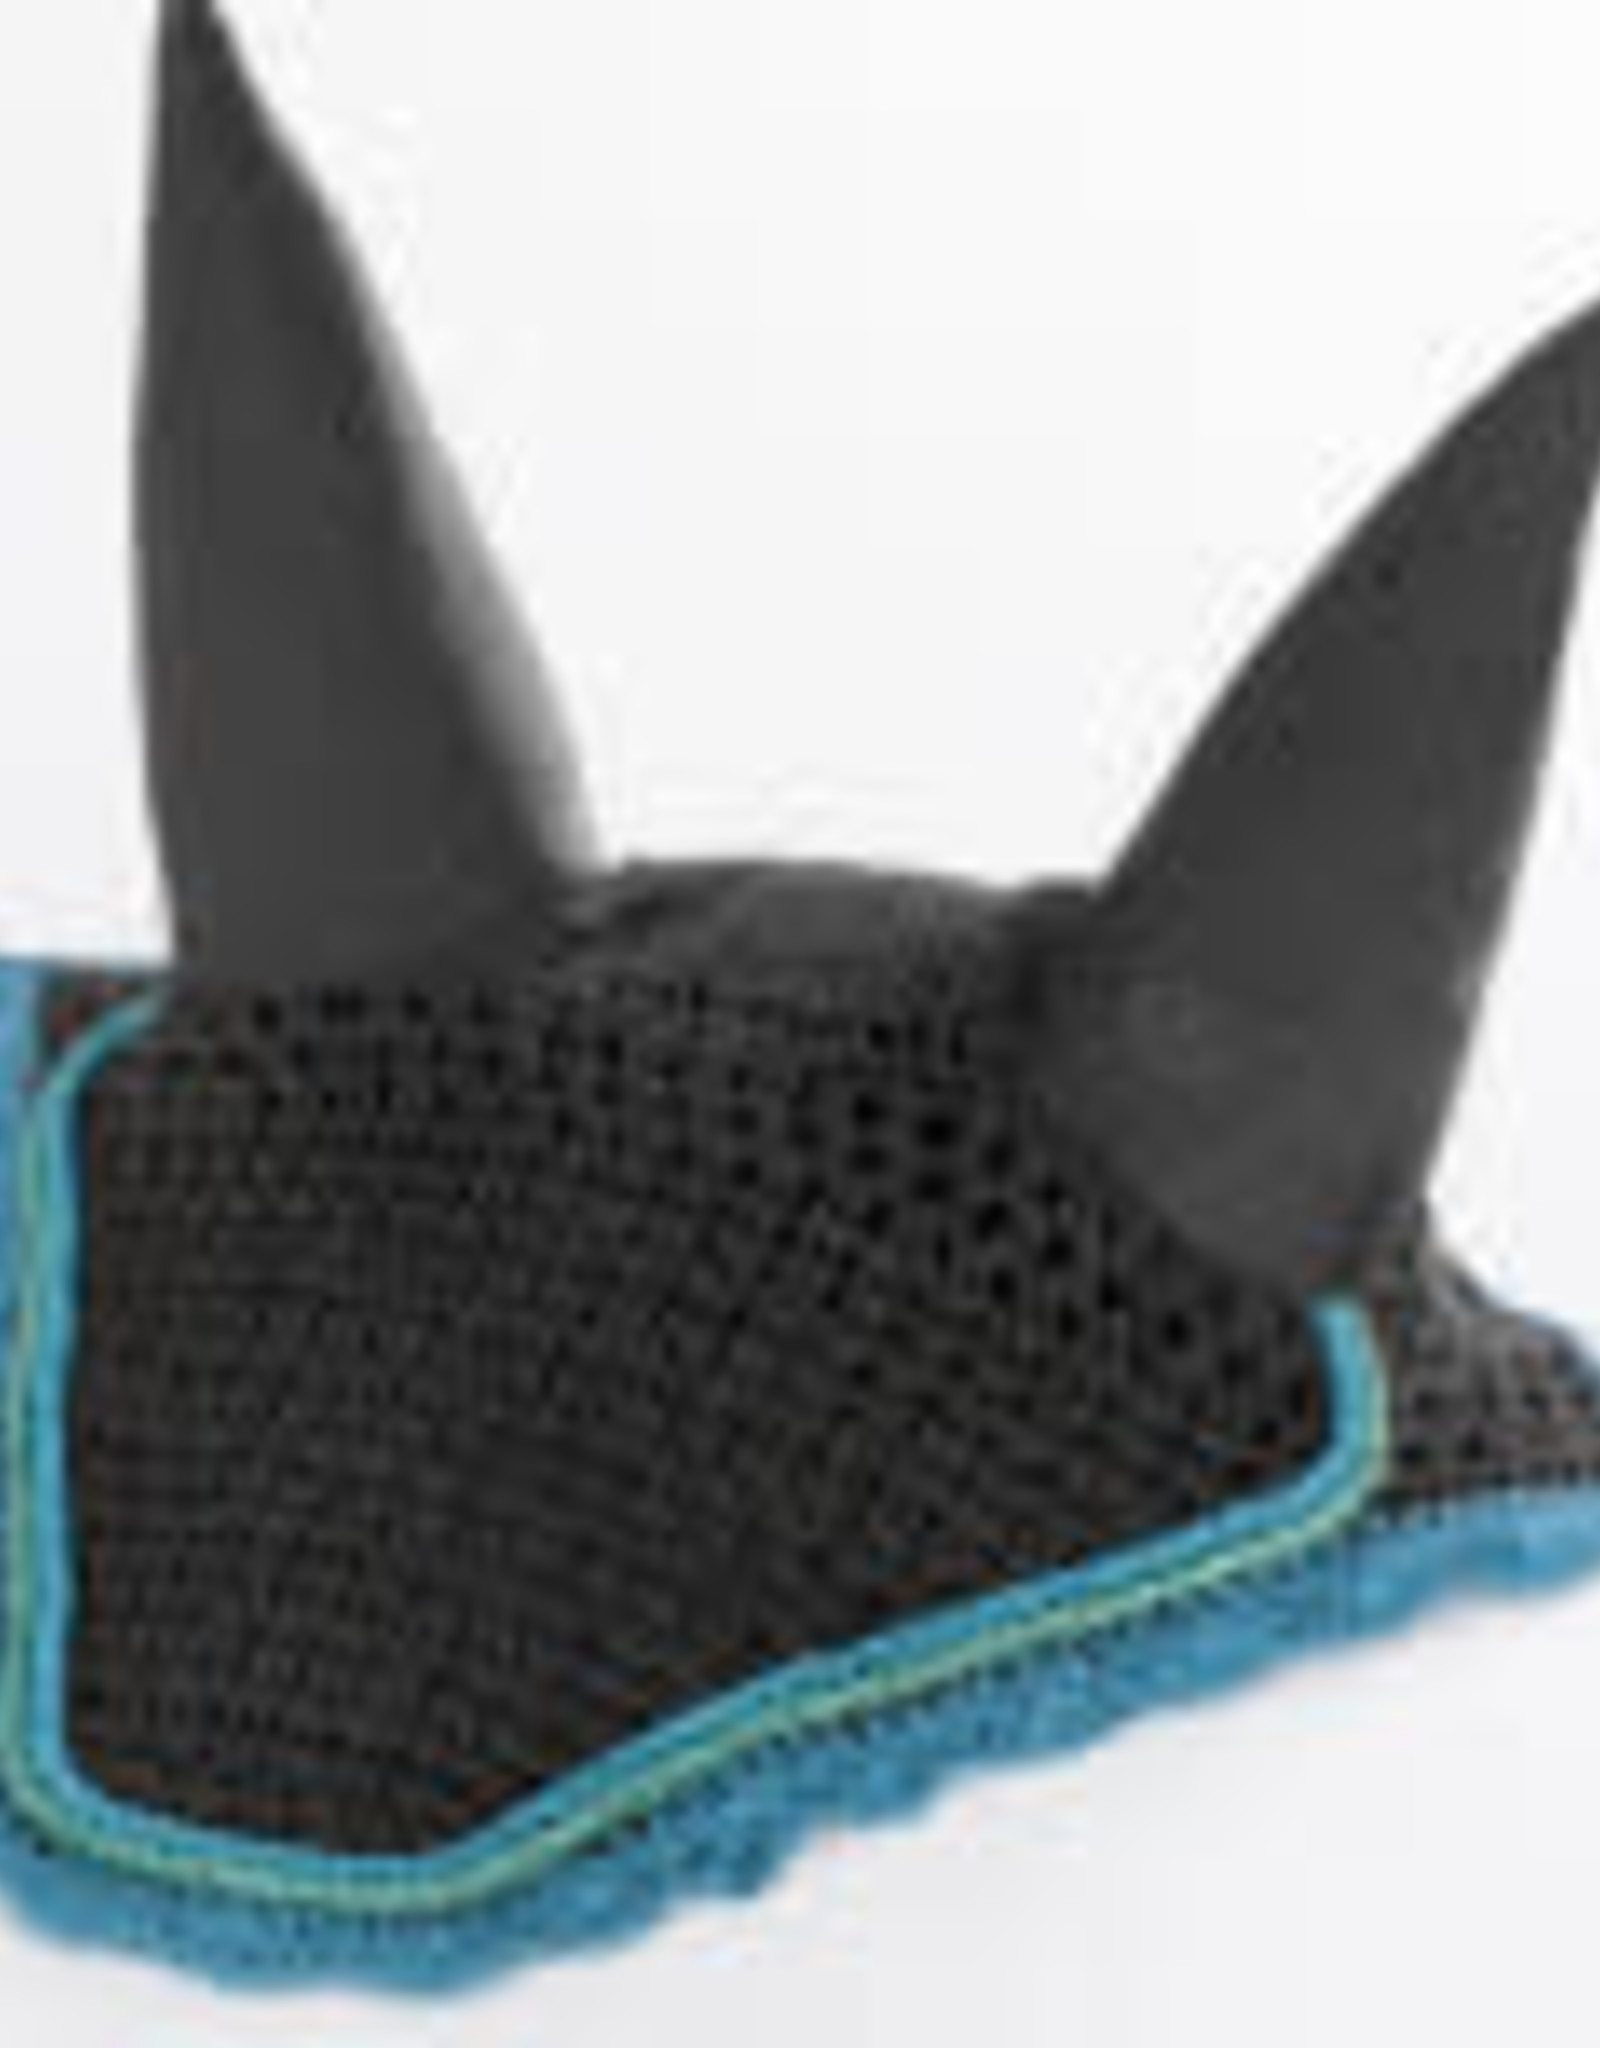 USG Fly Bonnet USG Crochet